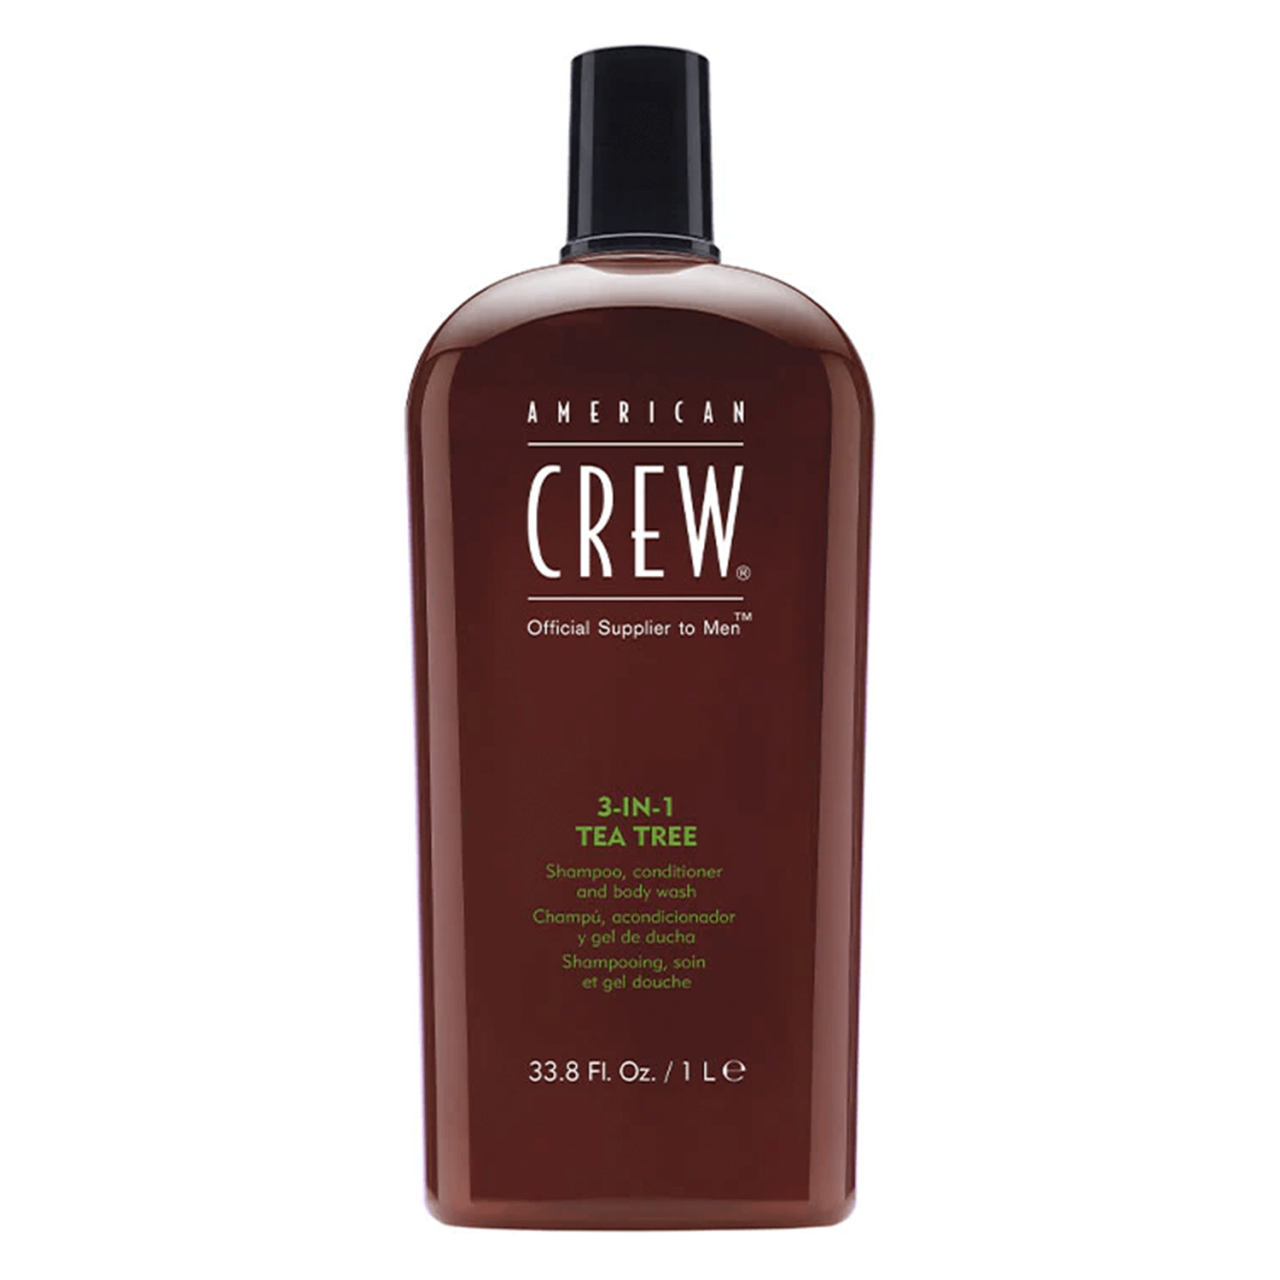 Crew Hair & Body Care - American Crew 3-in-1 Tea Tree Shampoo, Conditioner & Body Wash von American Crew